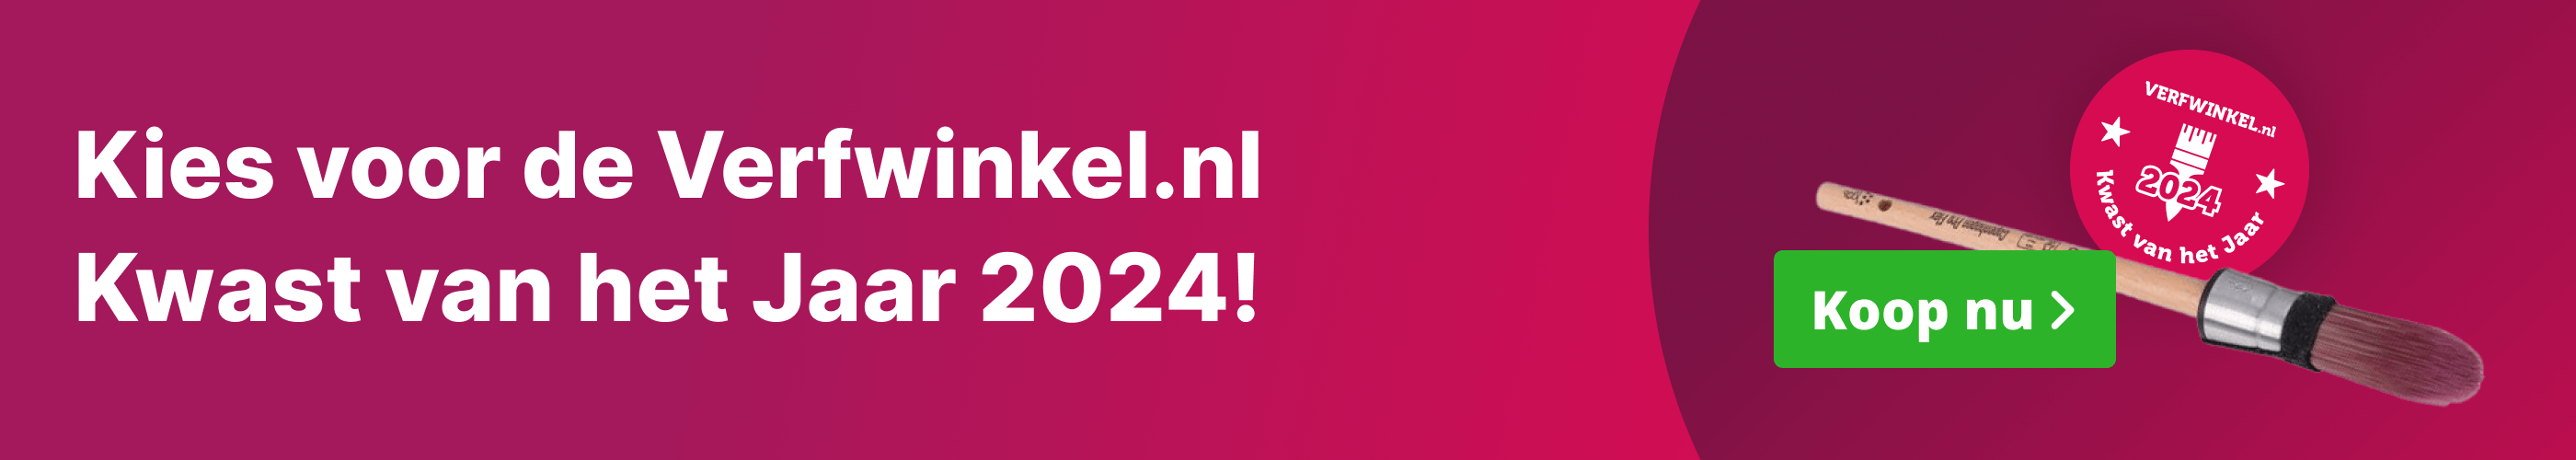 Banner Kies voor de Verfwinkel.nl Kwast van het Jaar 2024!